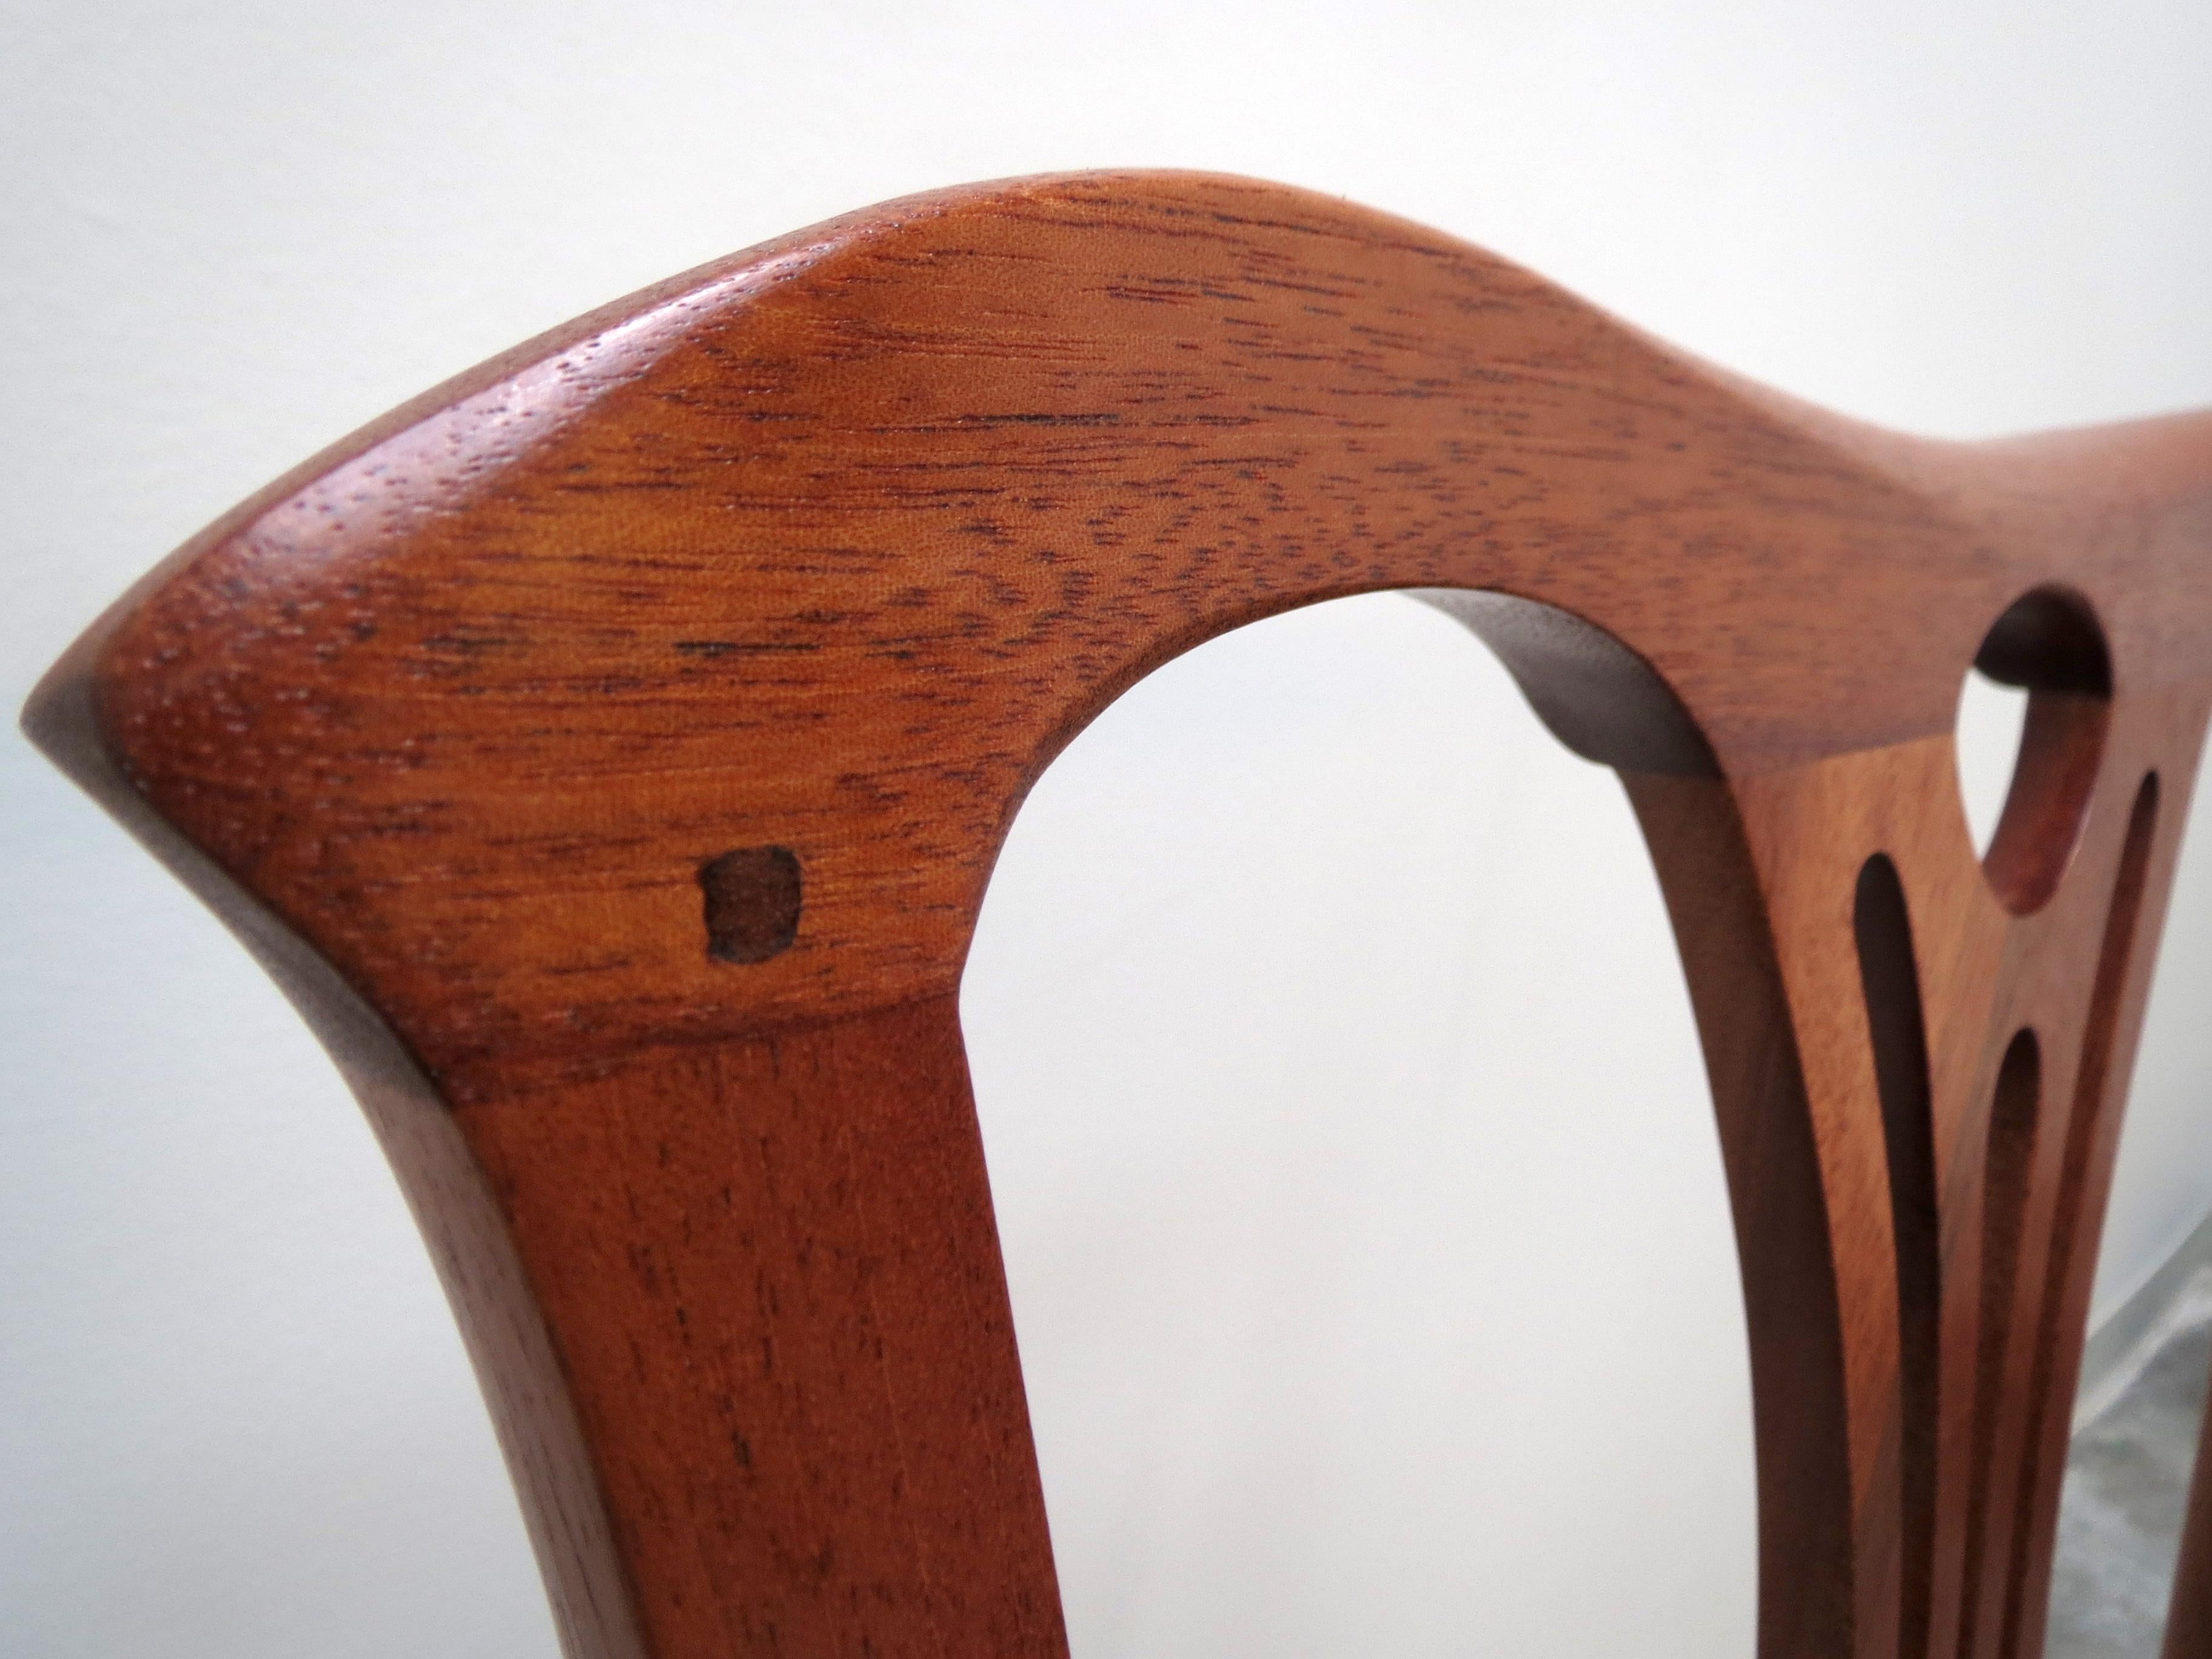 Construite avec une menuiserie traditionnelle, cette chaise peut être réalisée comme un ensemble de chaises de salle à manger ou d'appoint. Le dossier est une adaptation d'un modèle traditionnel et la chaise dans son ensemble est construite dans le